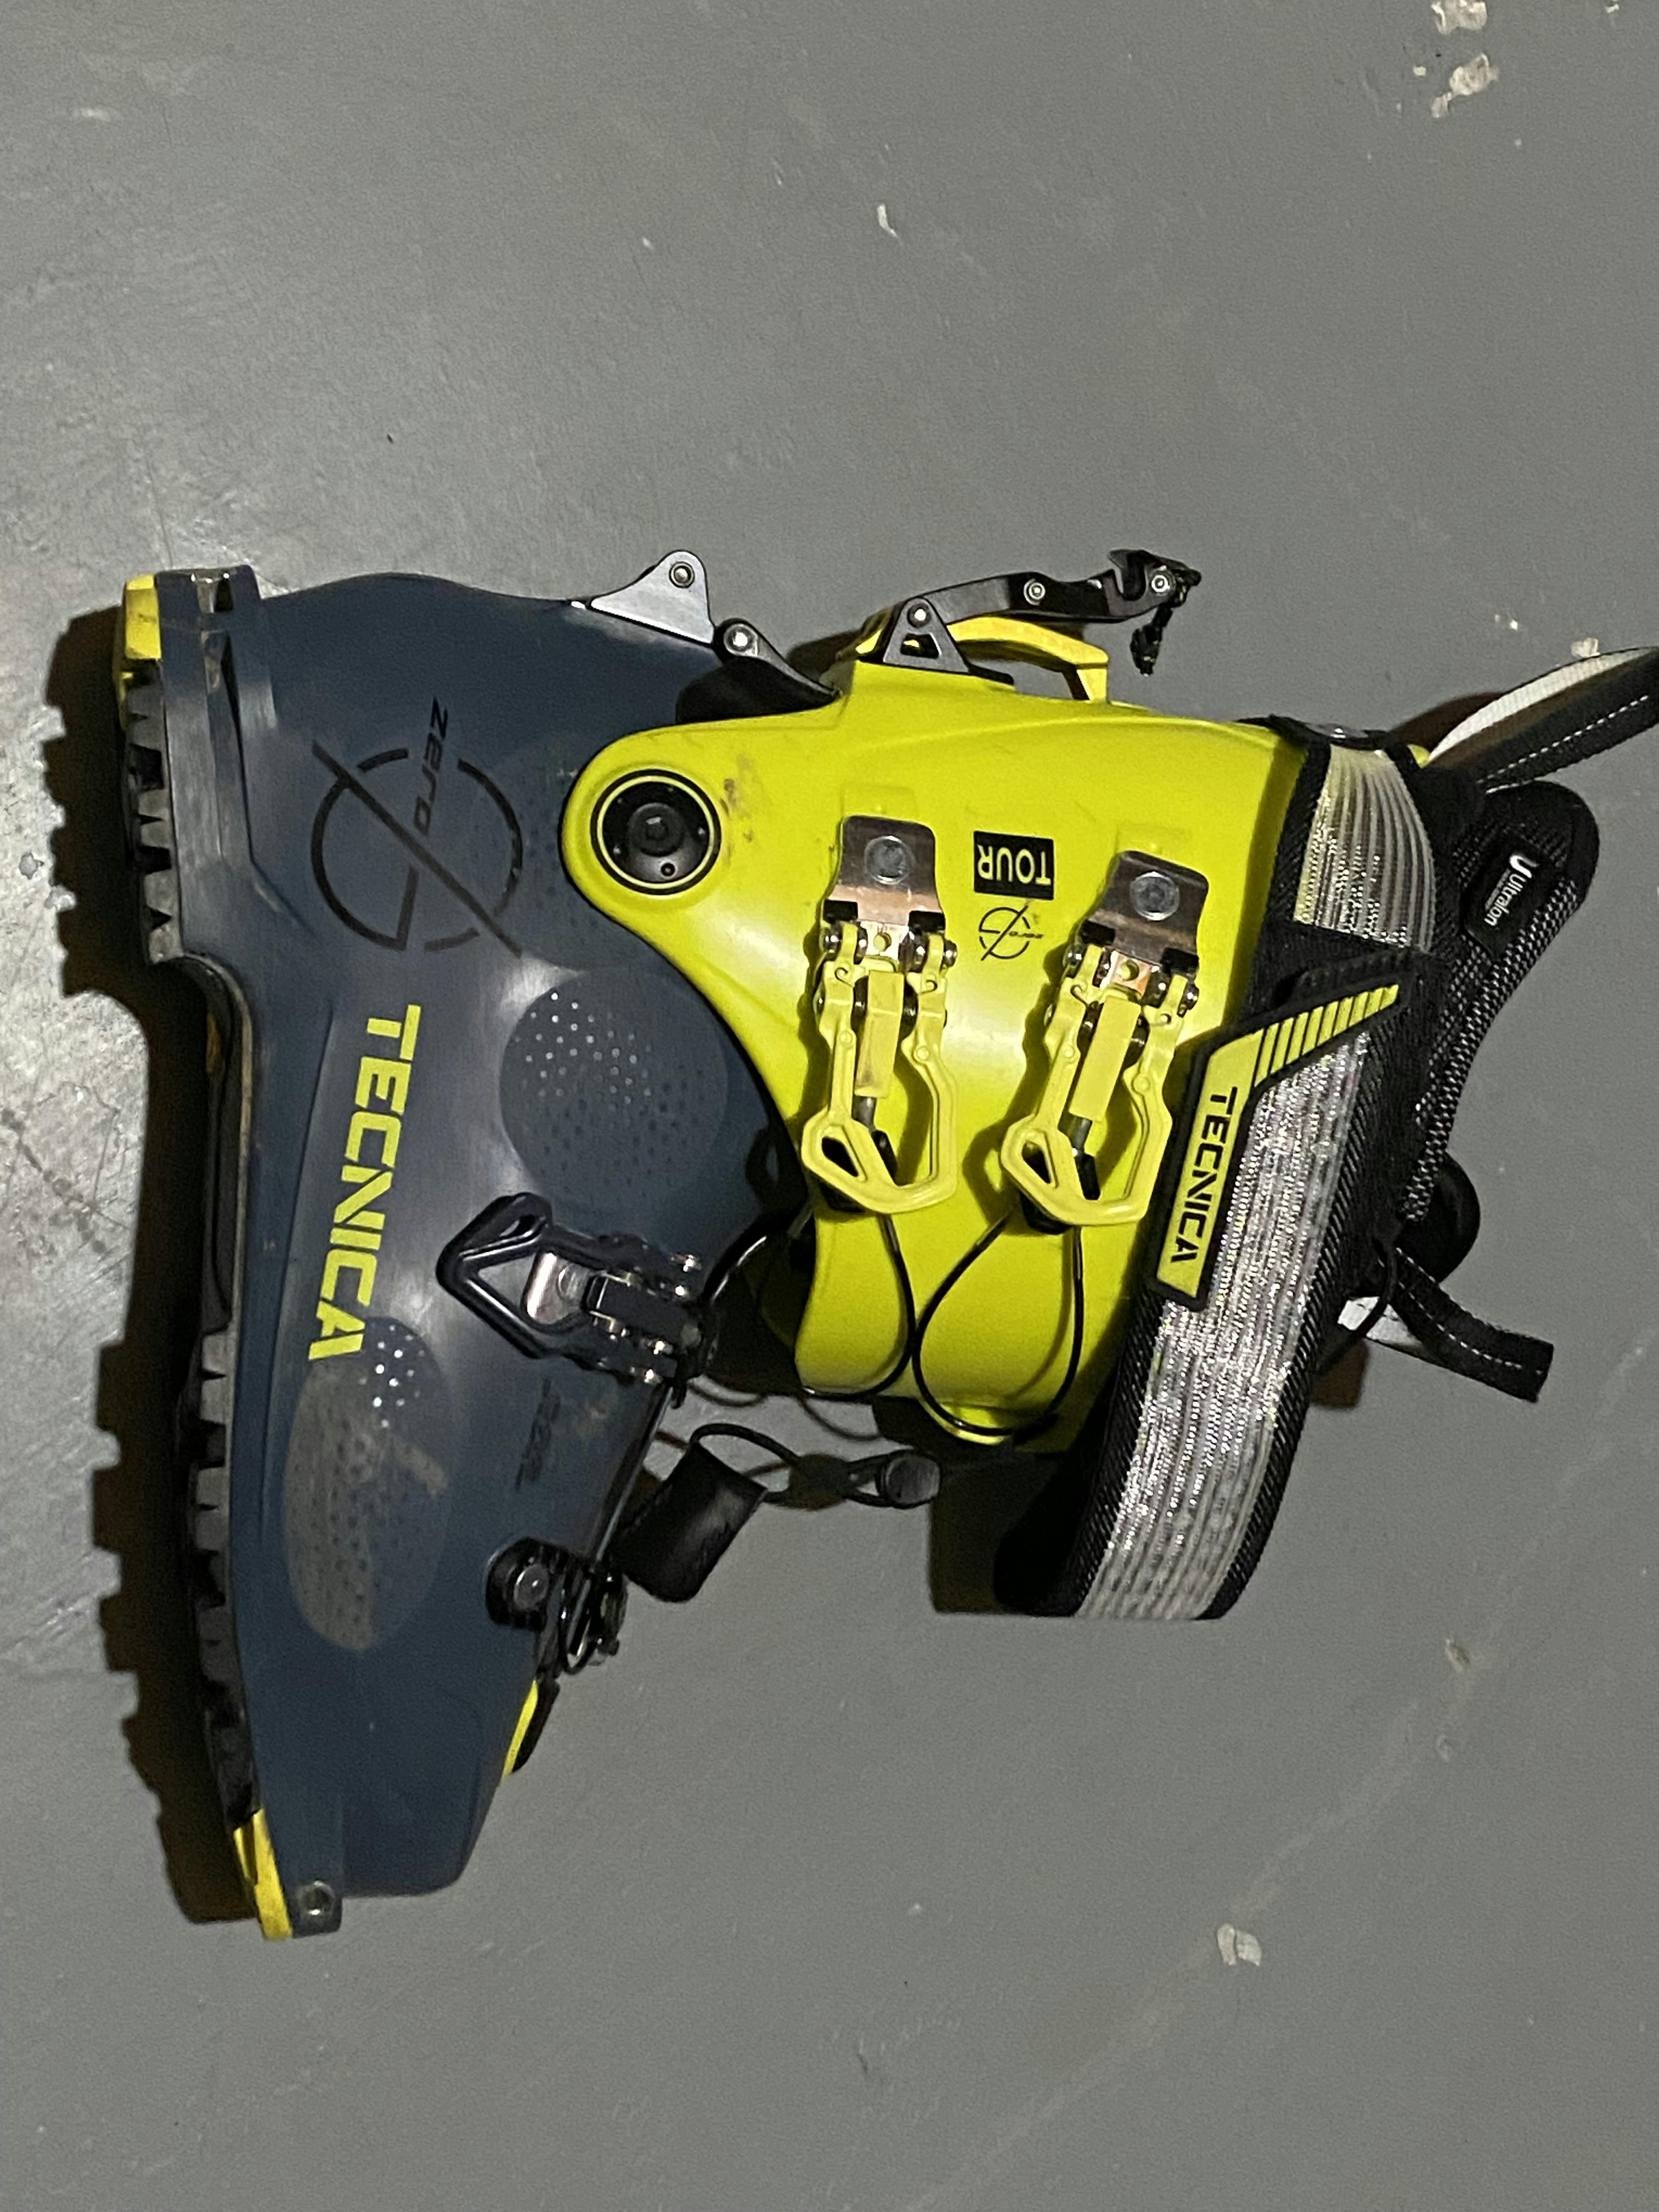 The Tecnica Zero G Tour Ski Boots.